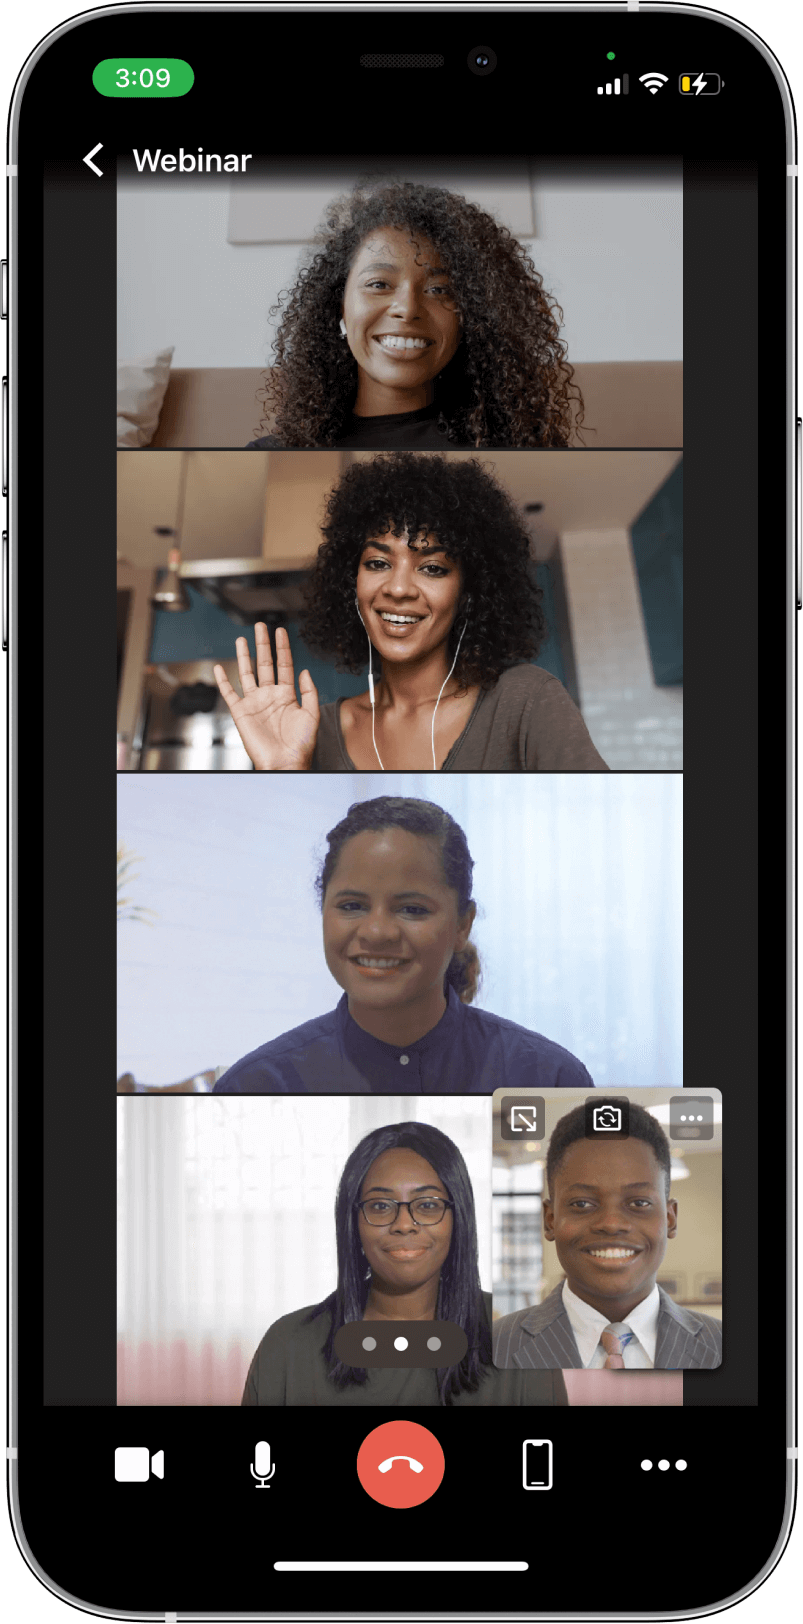 TrueConf 3.3 para iOS: nova interface do usuário, modo de reunião inteligente, acesso offline a chats, contatos e histórico de chamadas 9